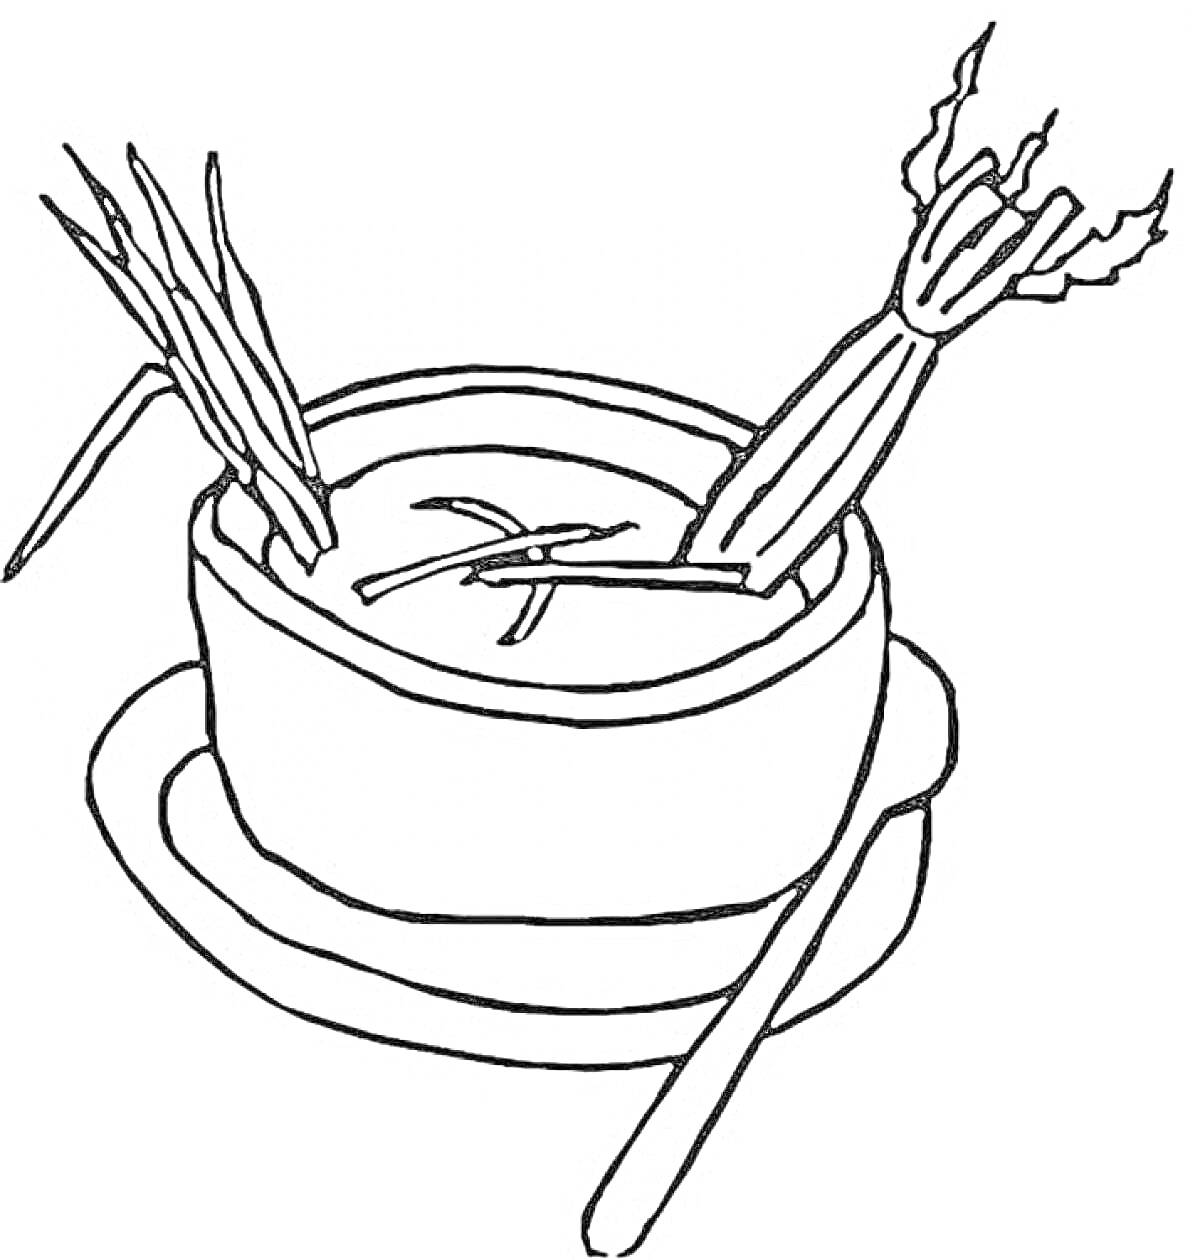 Раскраска Суп в миске с овощами (лук и сельдерей), на блюдце, ложка рядом